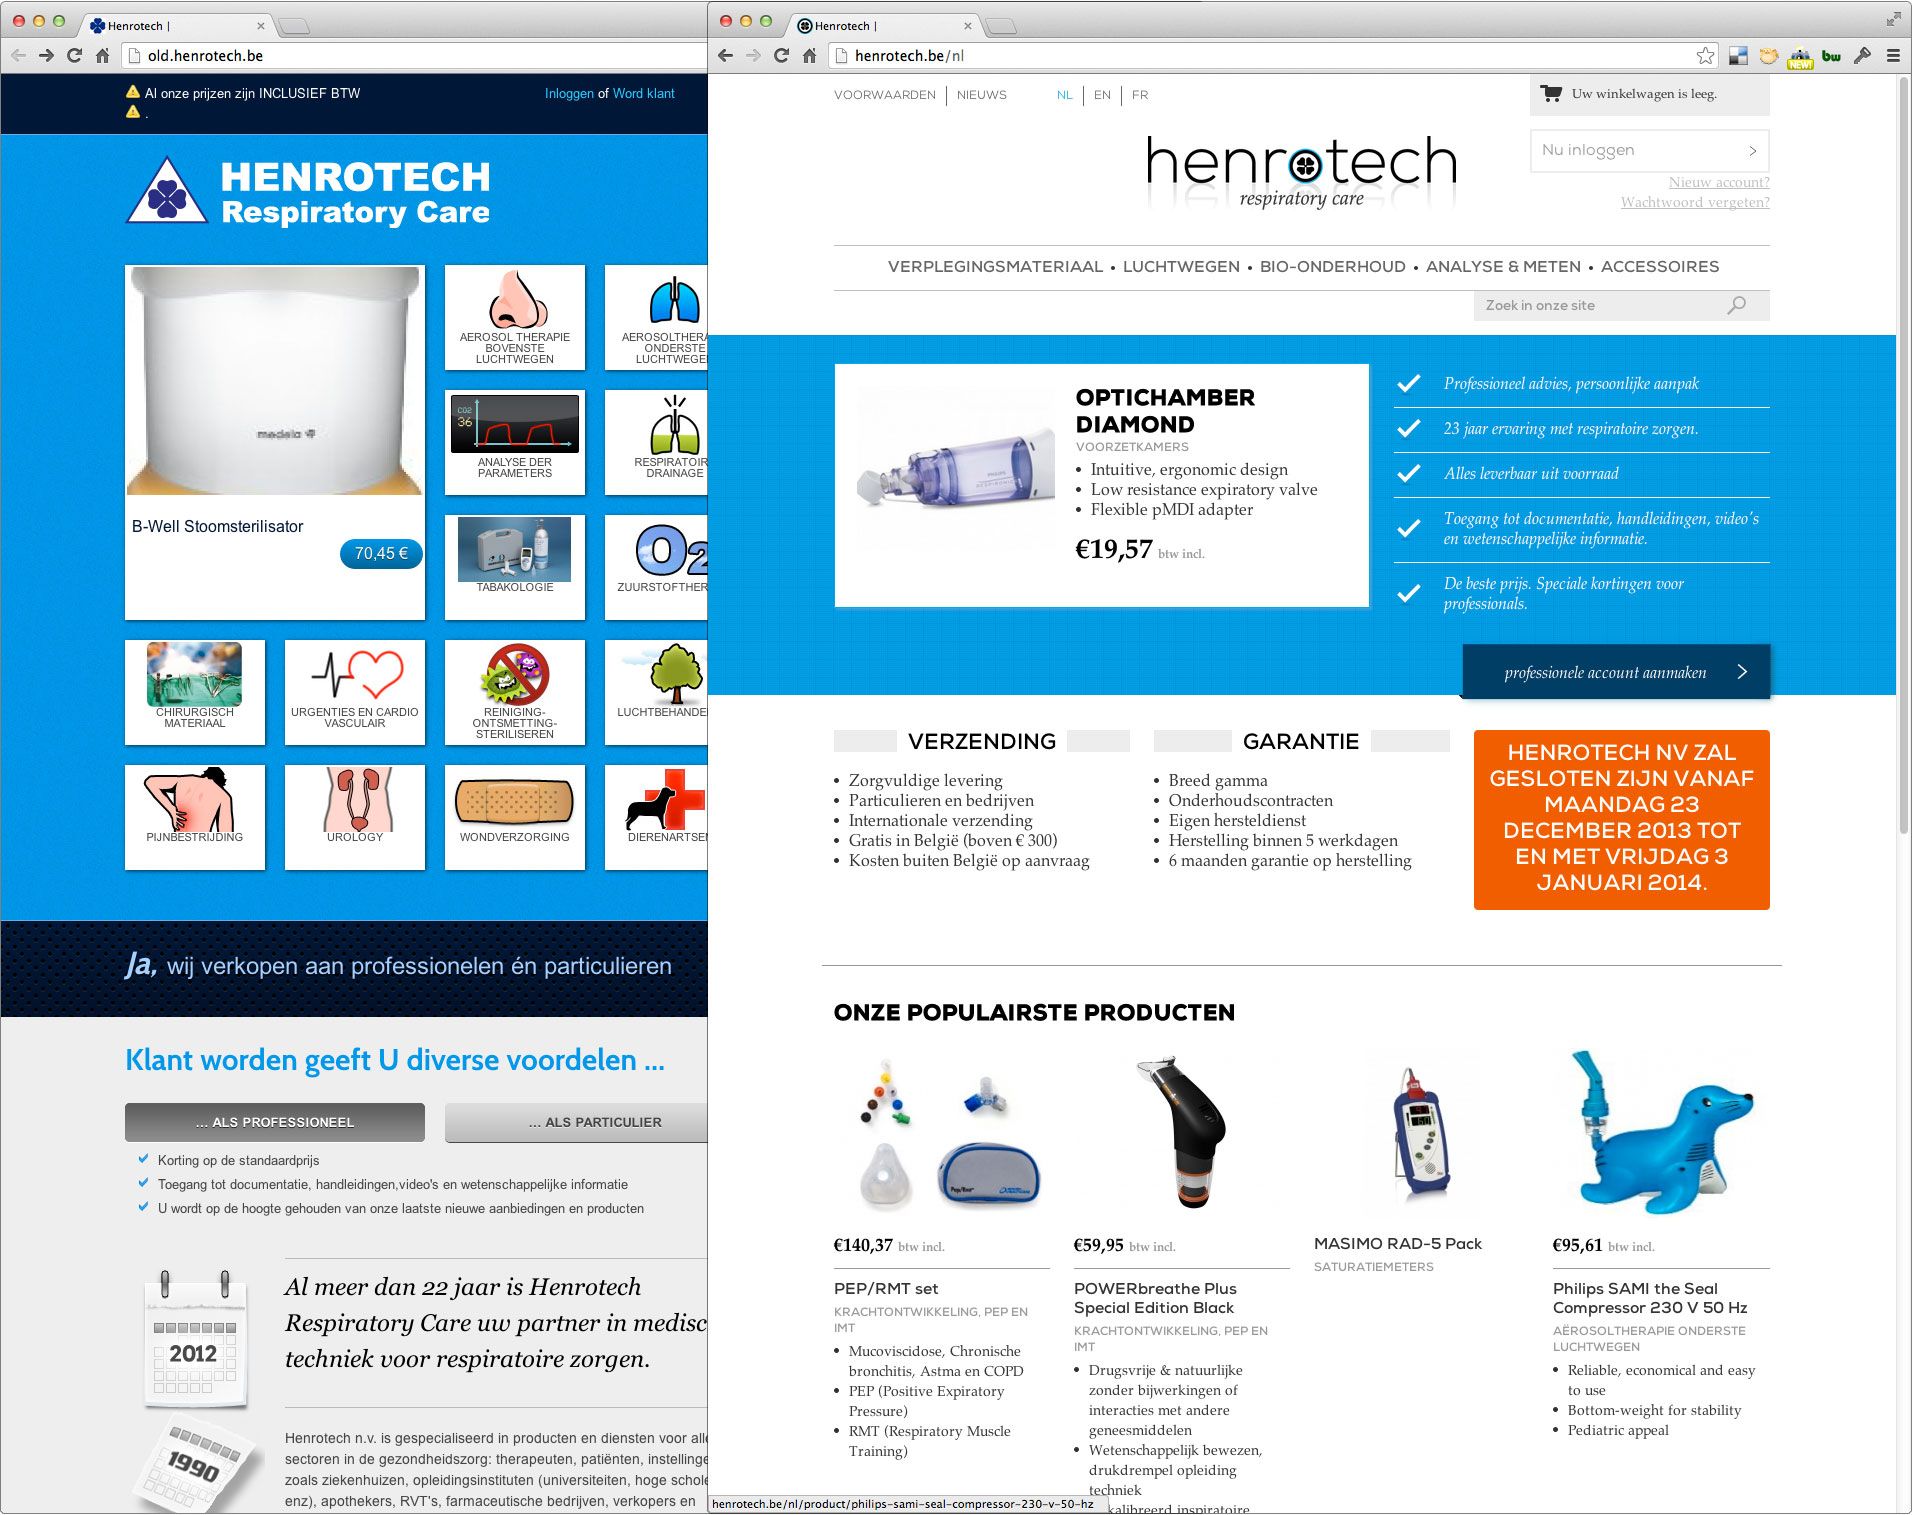 Oude en nieuwe webshop van Henrotech naast elkaar. Links de oude, rechts de nieuwe.